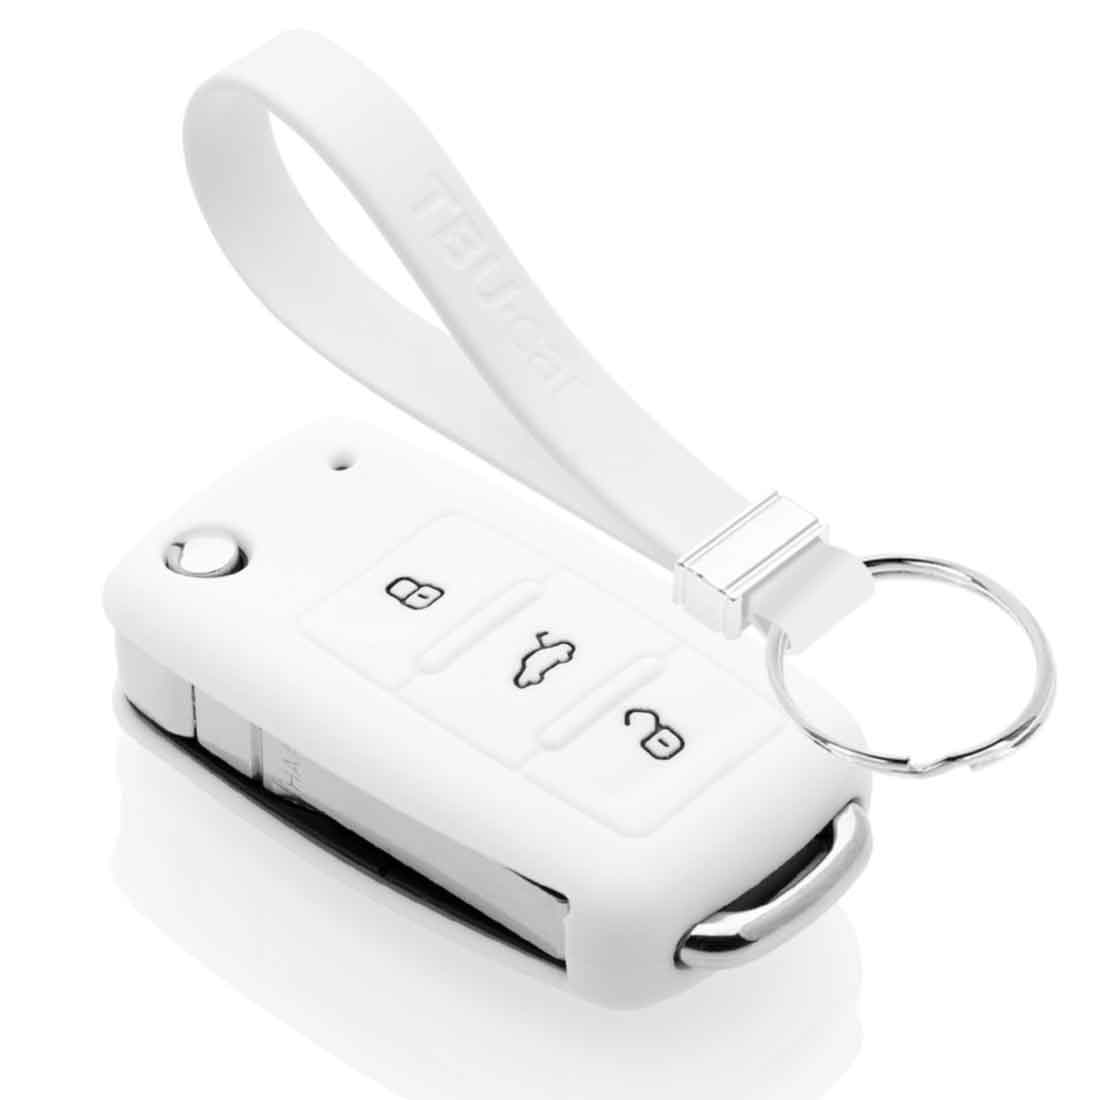 TPU Autoschlüssel Hülle Abdeckung + Schlüsselanhänger passt für